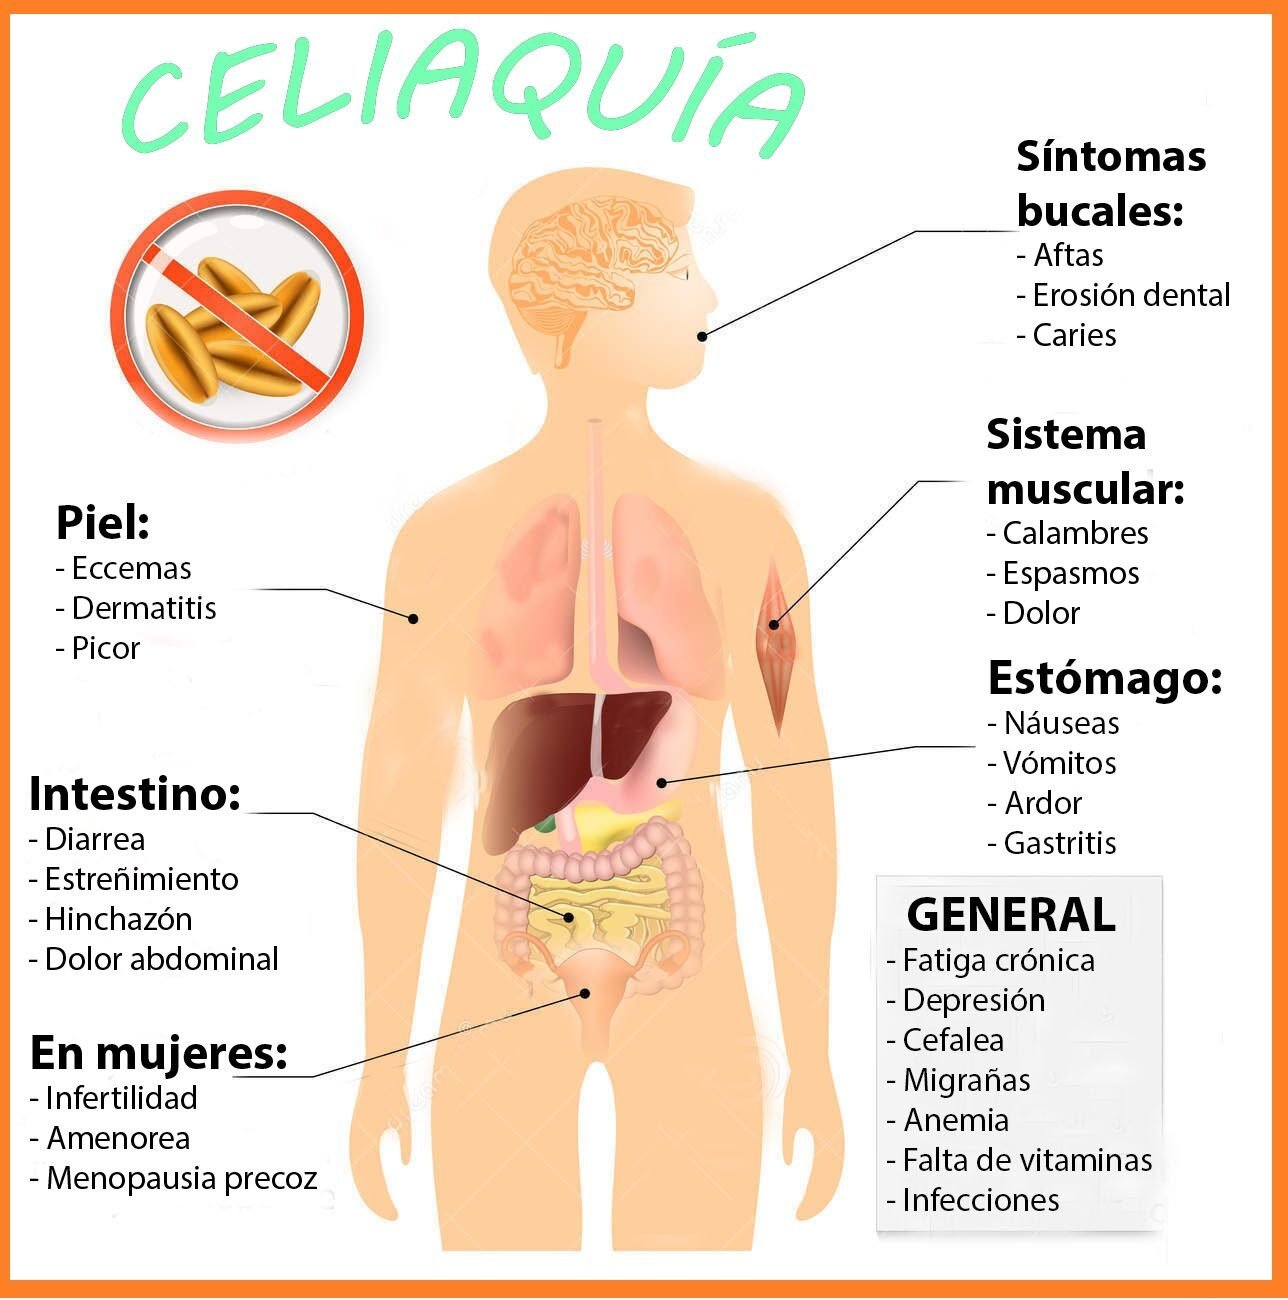 coeliac-disease-celiac-disease-sprue-signs-symptoms-human-silhouette-highlighted-internal-organs-56210159-9783556